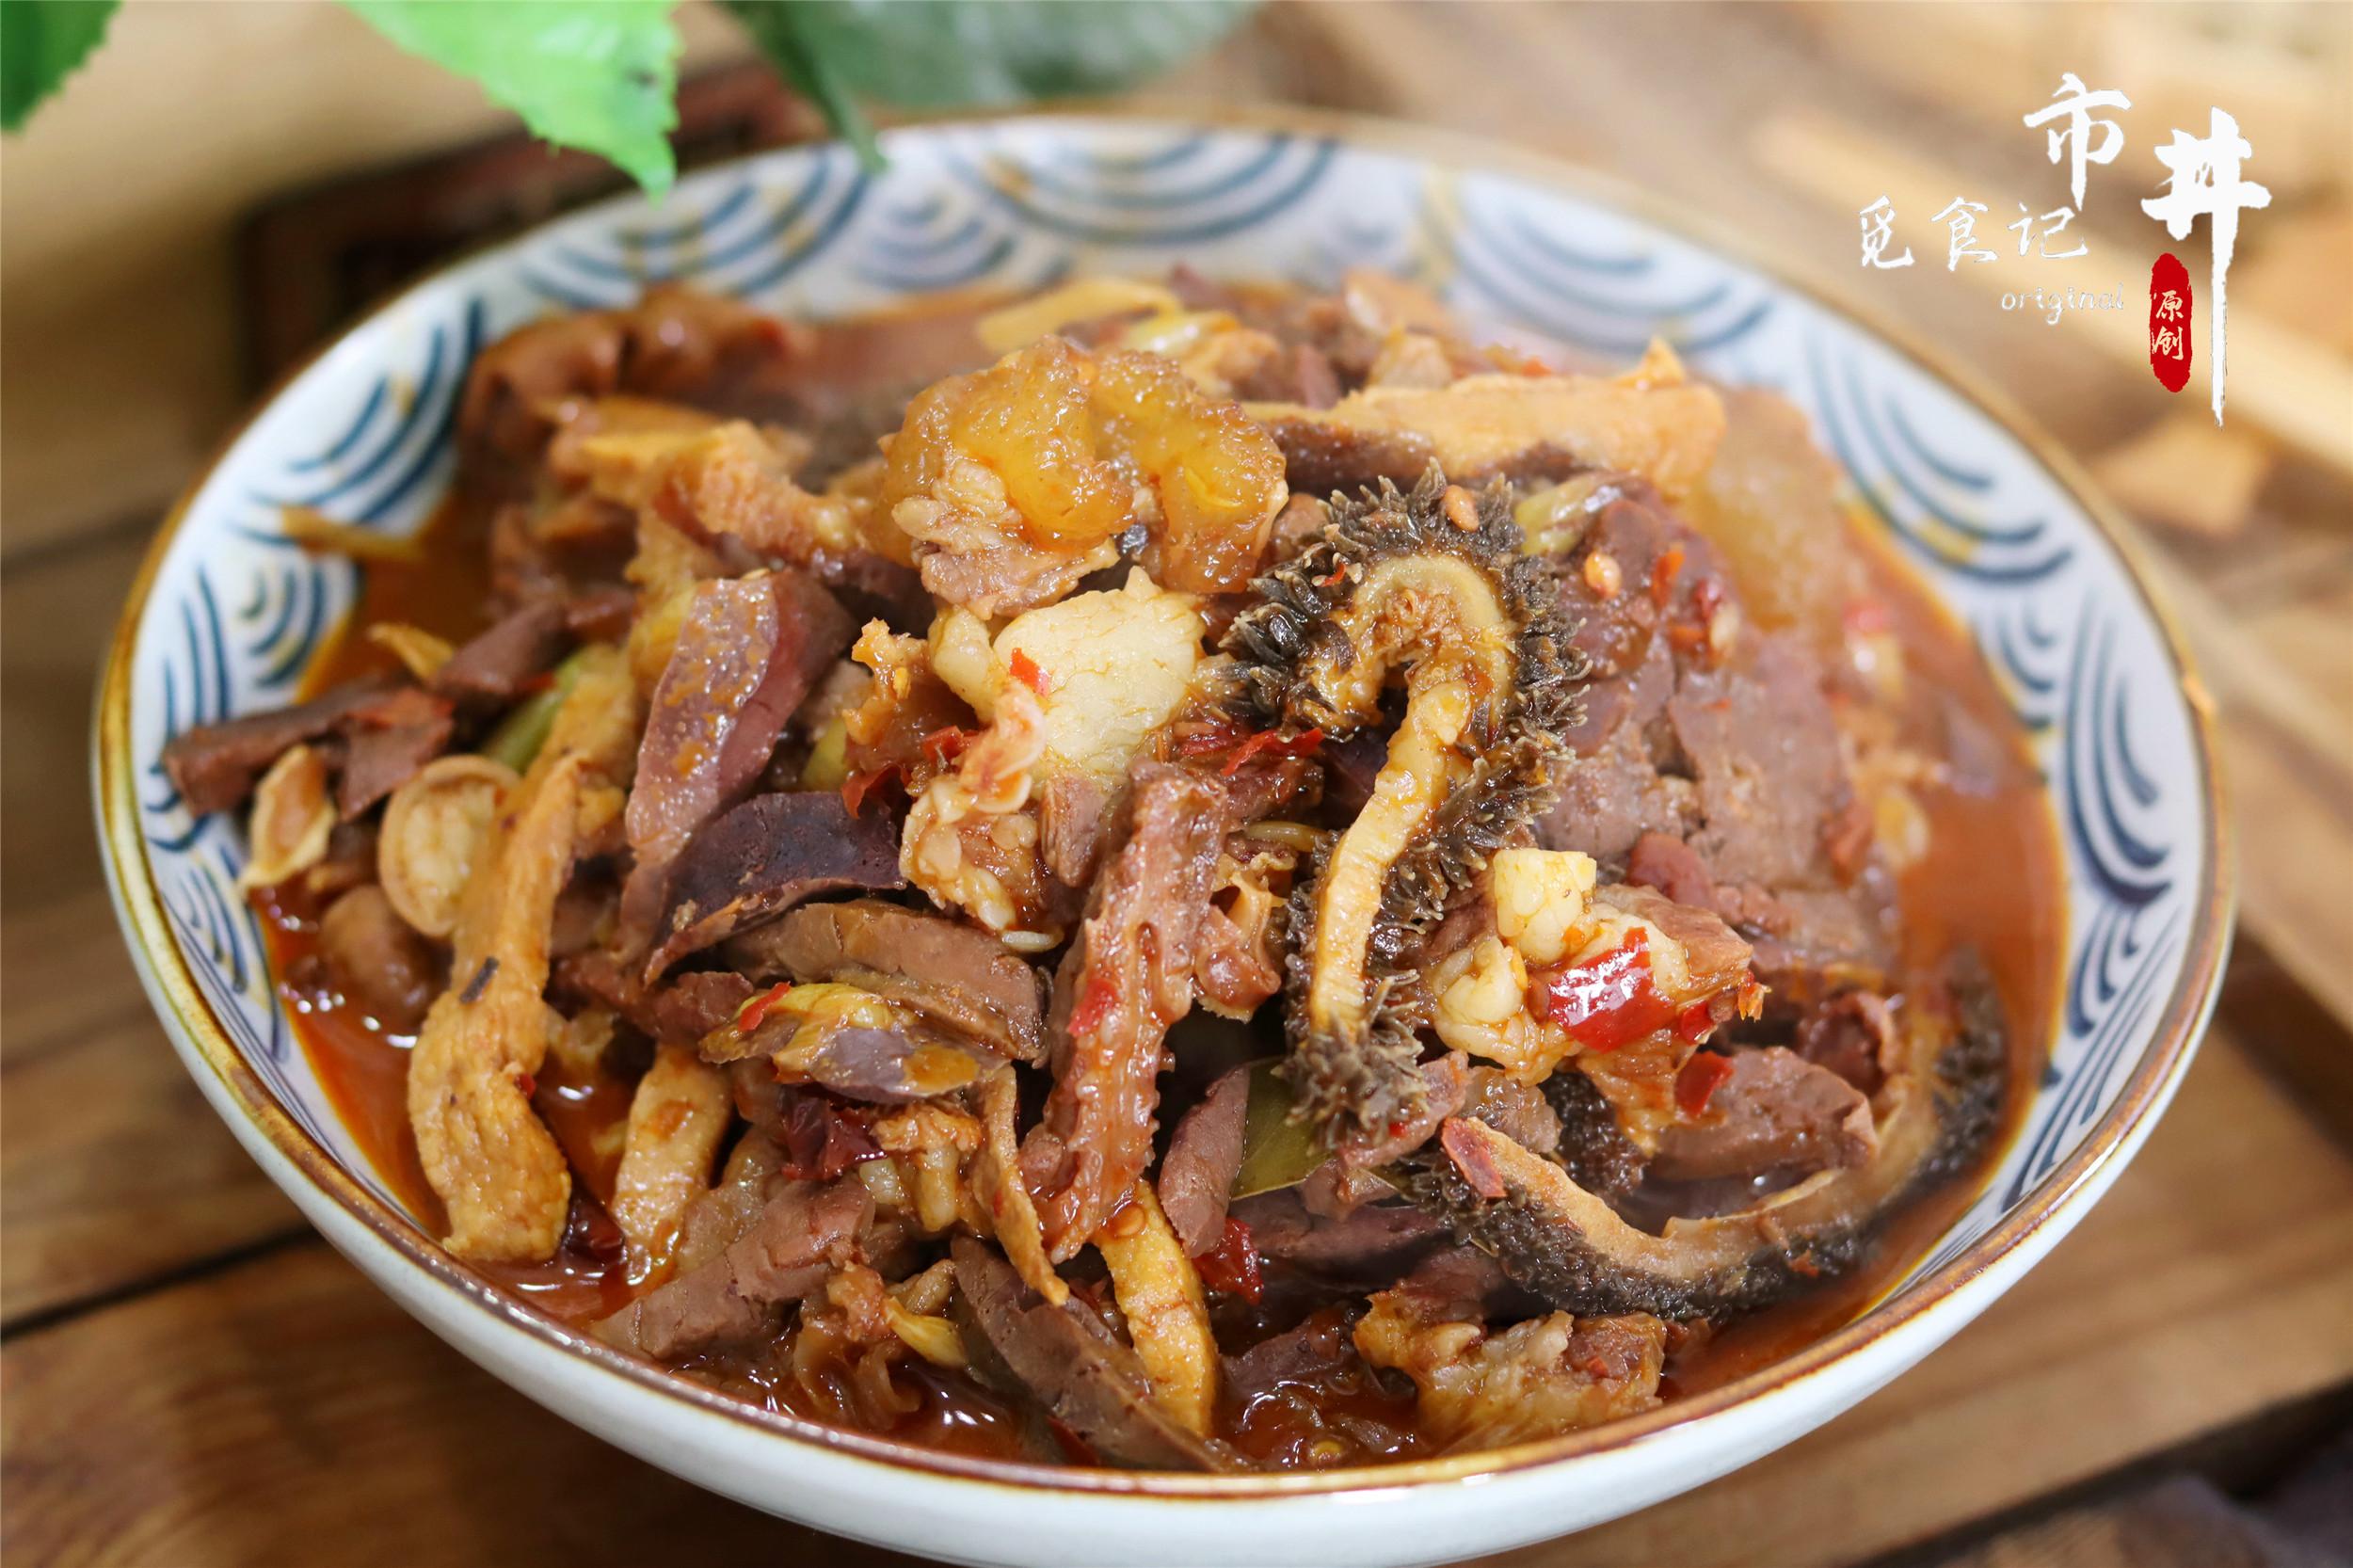 Kubet: Thịt bò đắt đỏ, thịt lợn nhiều dầu mỡ, thà ăn "linh tinh"